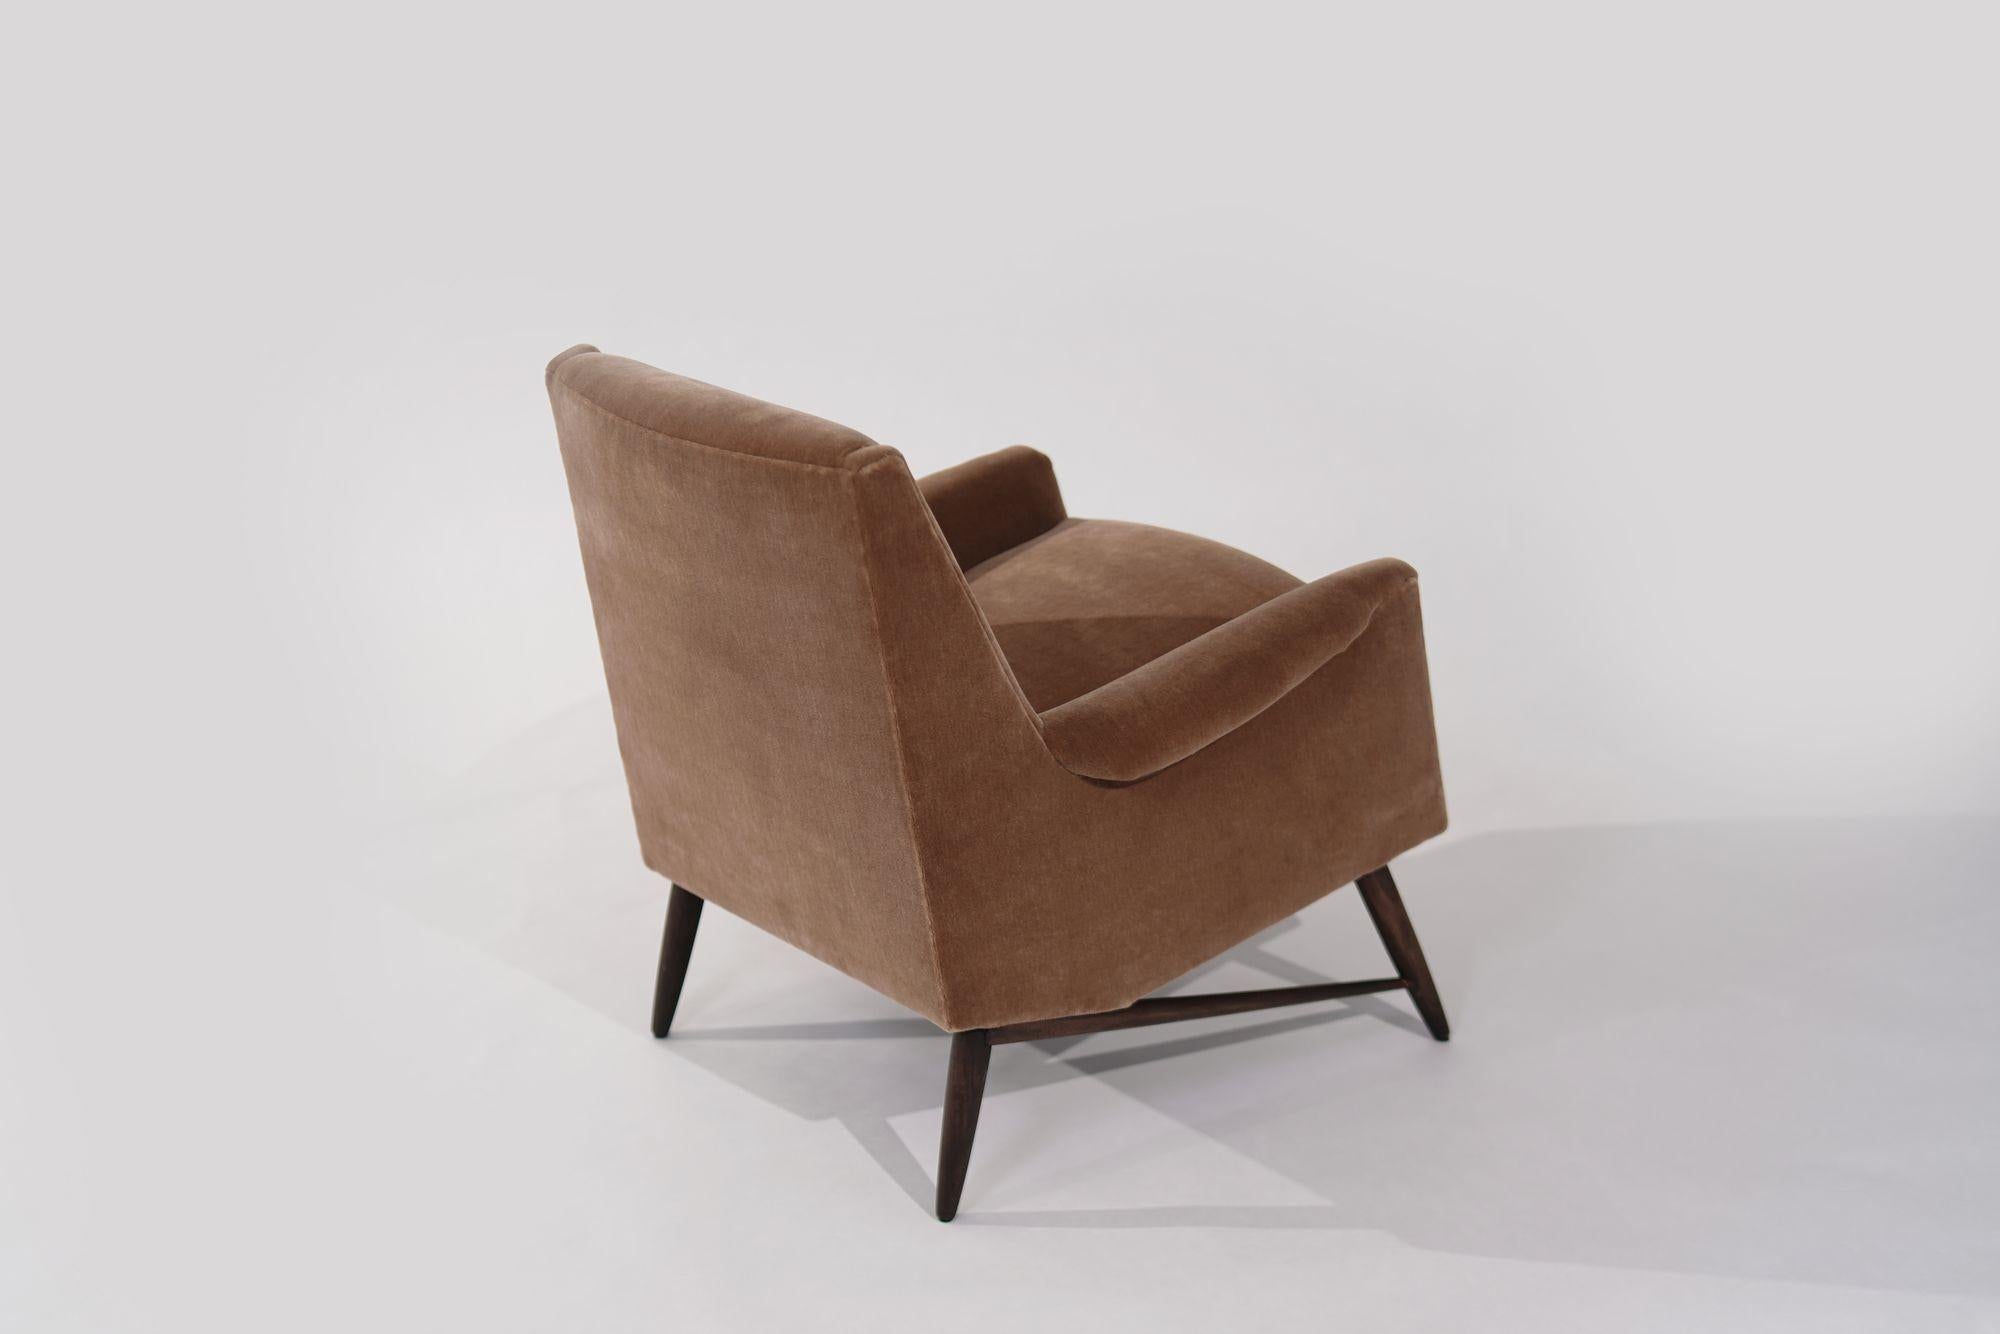 Découvrez l'élégance intemporelle avec cette chaise longue The Modern Scandinavian des années 1950. Méticuleusement restaurée et retapissée en luxueux mohair doré, elle incarne le charme et la sophistication du milieu du siècle. Une pièce de choix